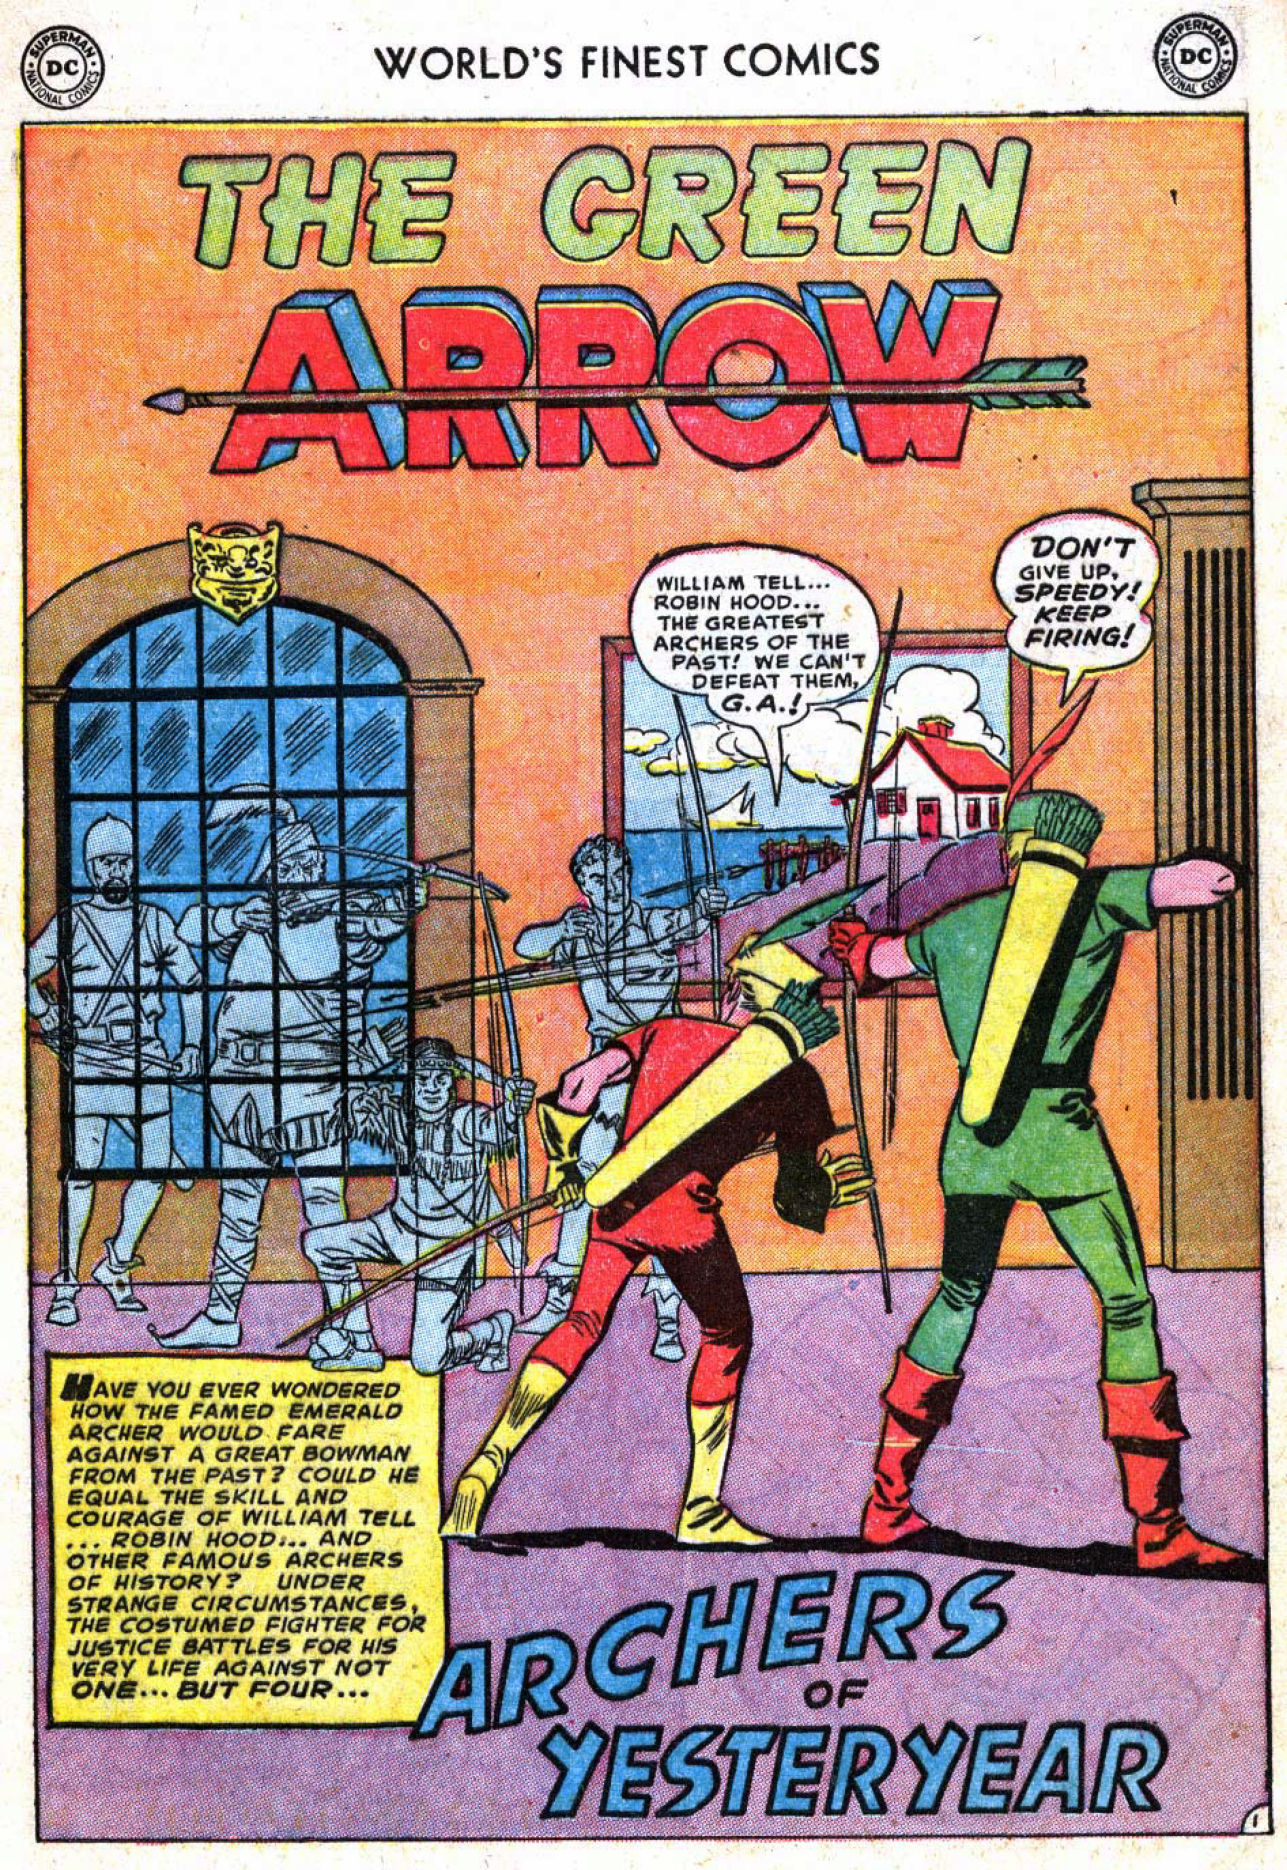 When Green Arrow Met Robin Hood More Golden Age Comics